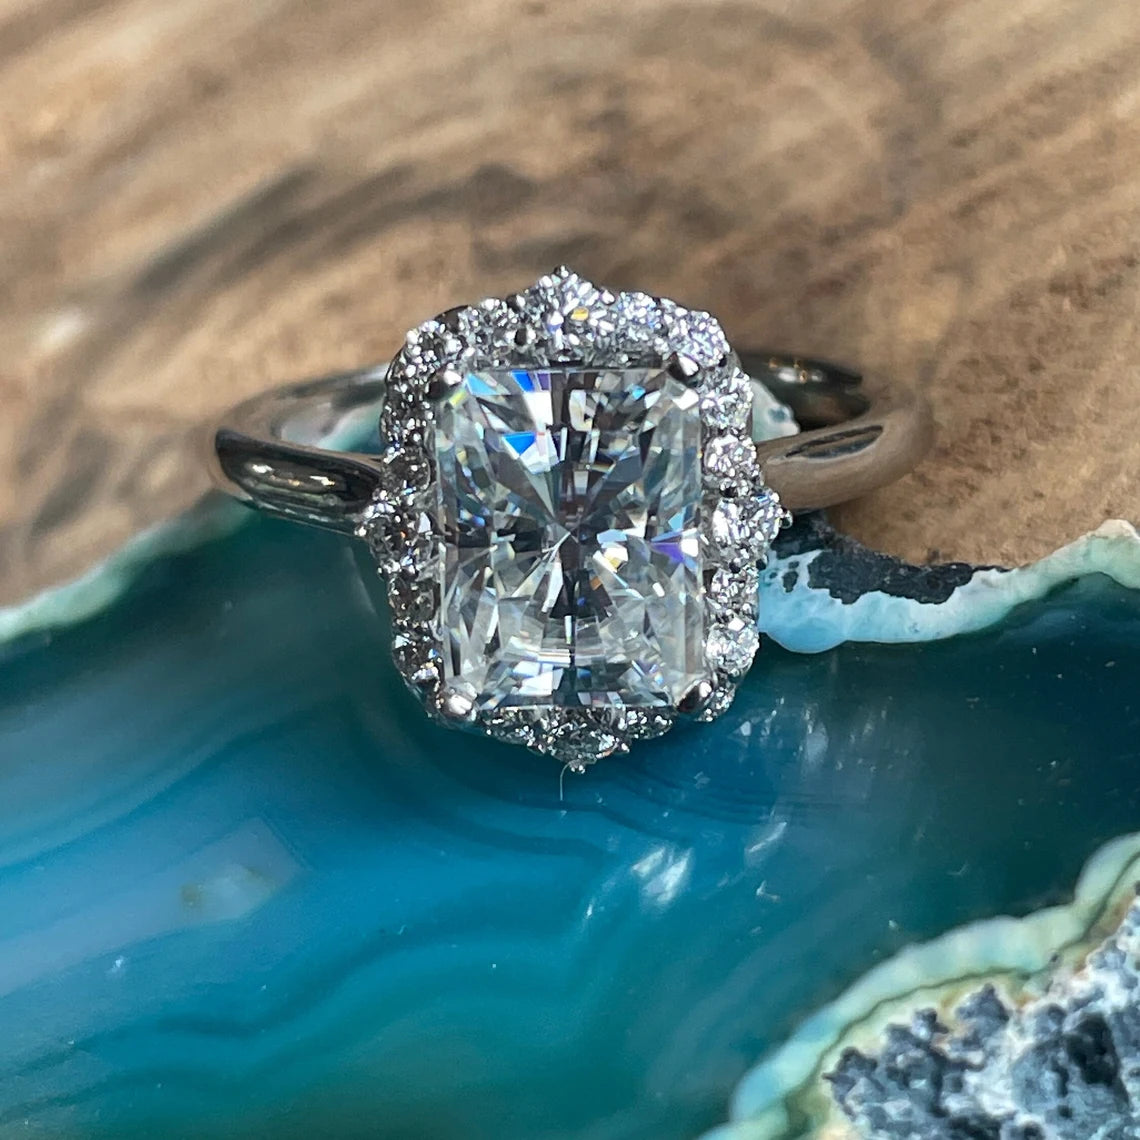 bridget ring - 2 carat moissanite engagement ring, vintage inspired ring, diamond halo - J Hollywood Designs